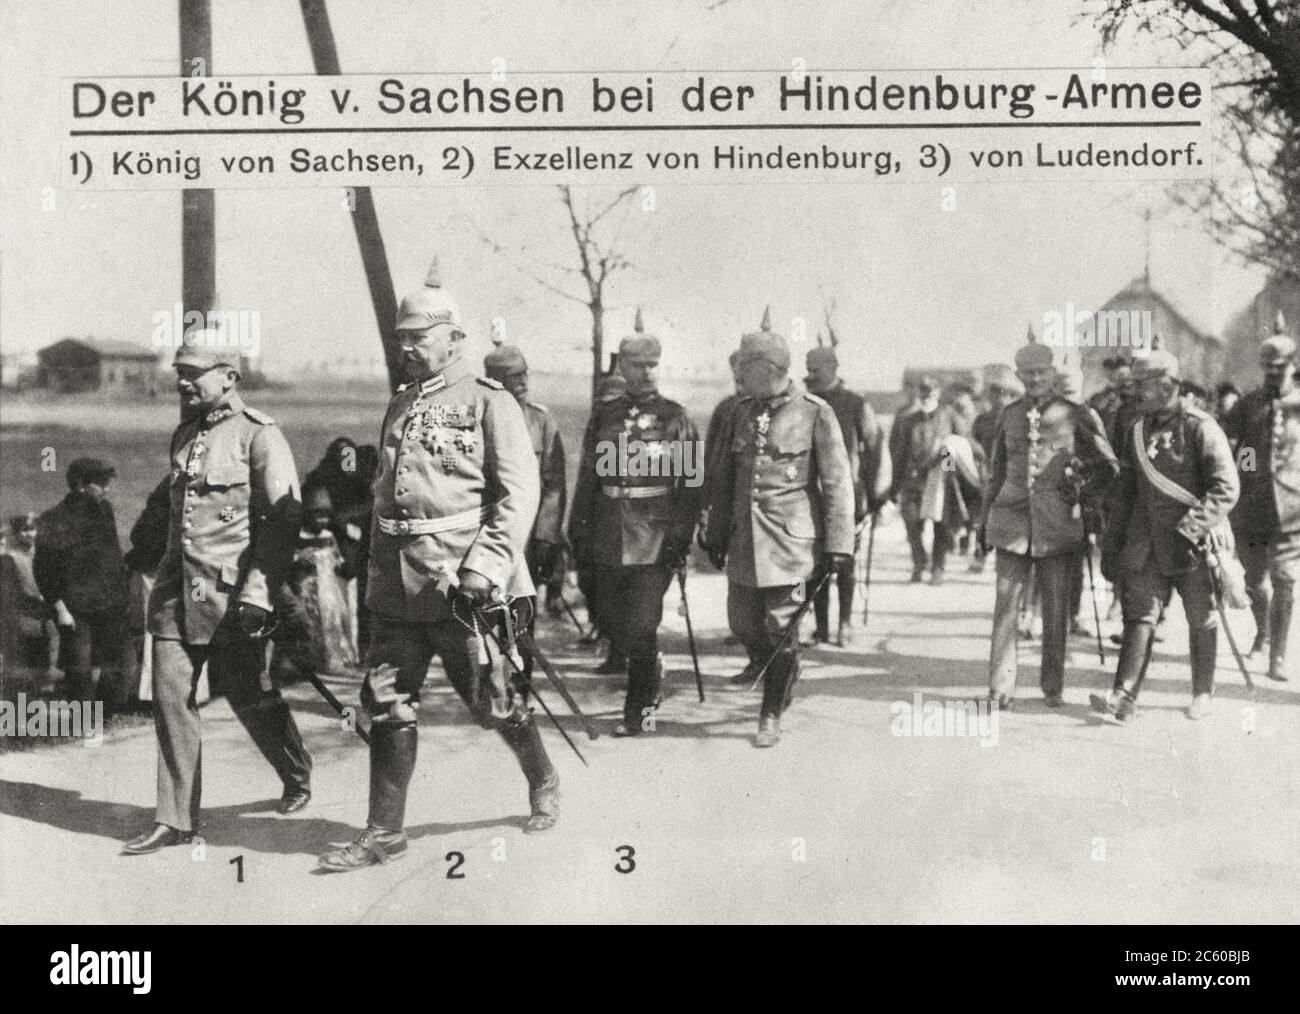 Deutsche Retro-Postkarte. 1. König von Sachsen. 2. Exzellenz der Hindenburg. 3. General von Ludendorf. Deutsches Reich. 1914-1917 Stockfoto